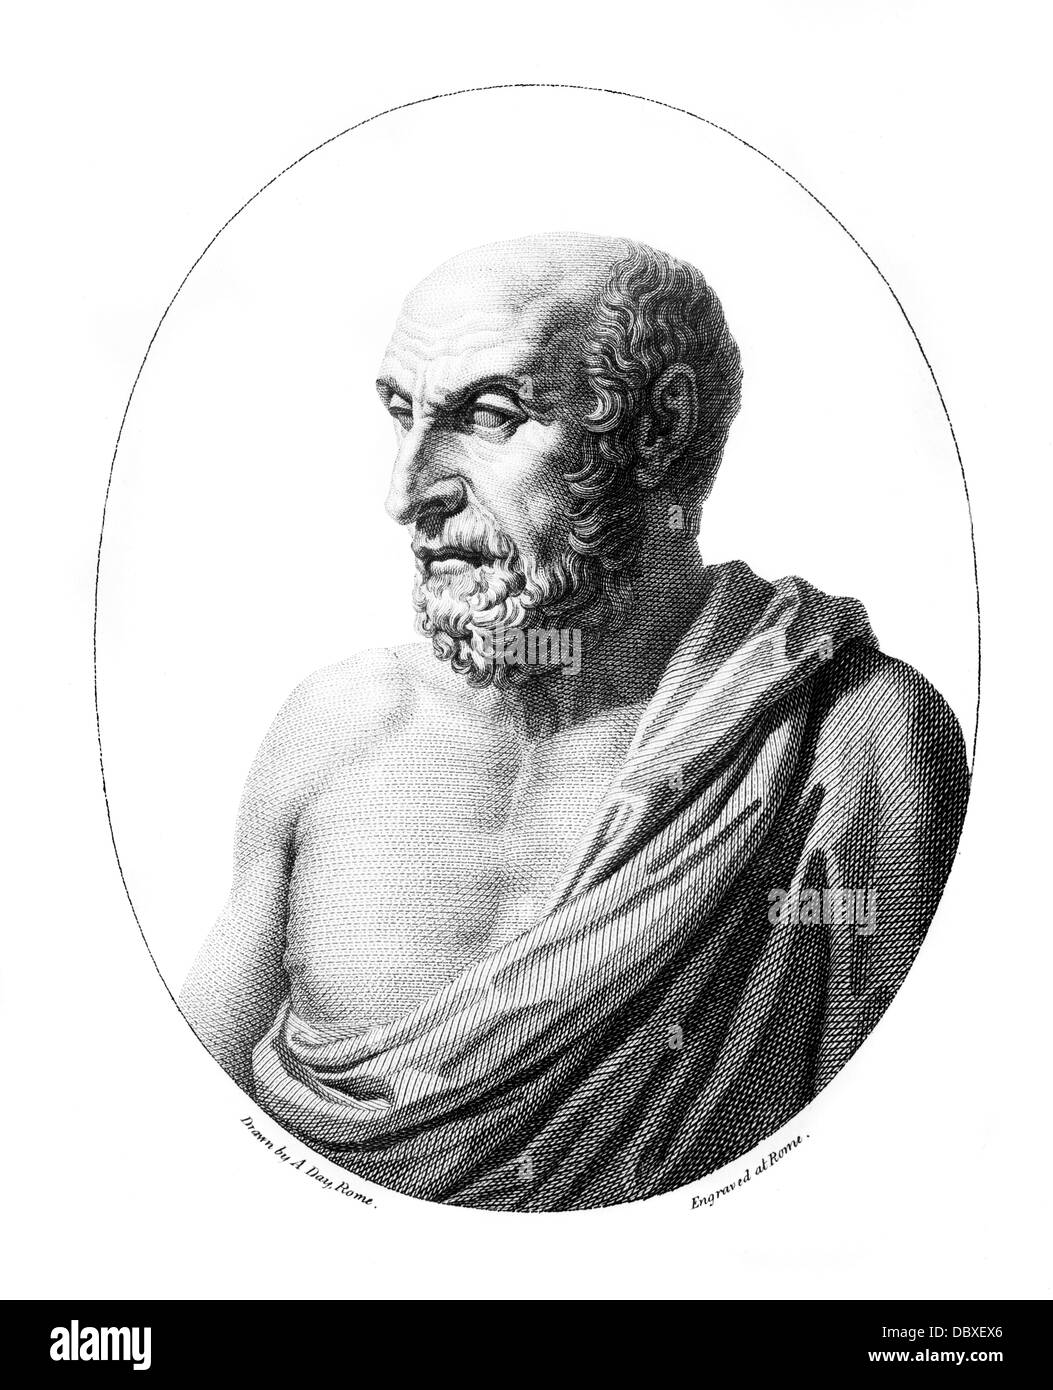 Le philosophe grec DÉMOCRITE 400 BC ADVANCED Théorie atomique GRAVURE D'UN BUSTE DANS LE CONCILE VATICAN II Banque D'Images